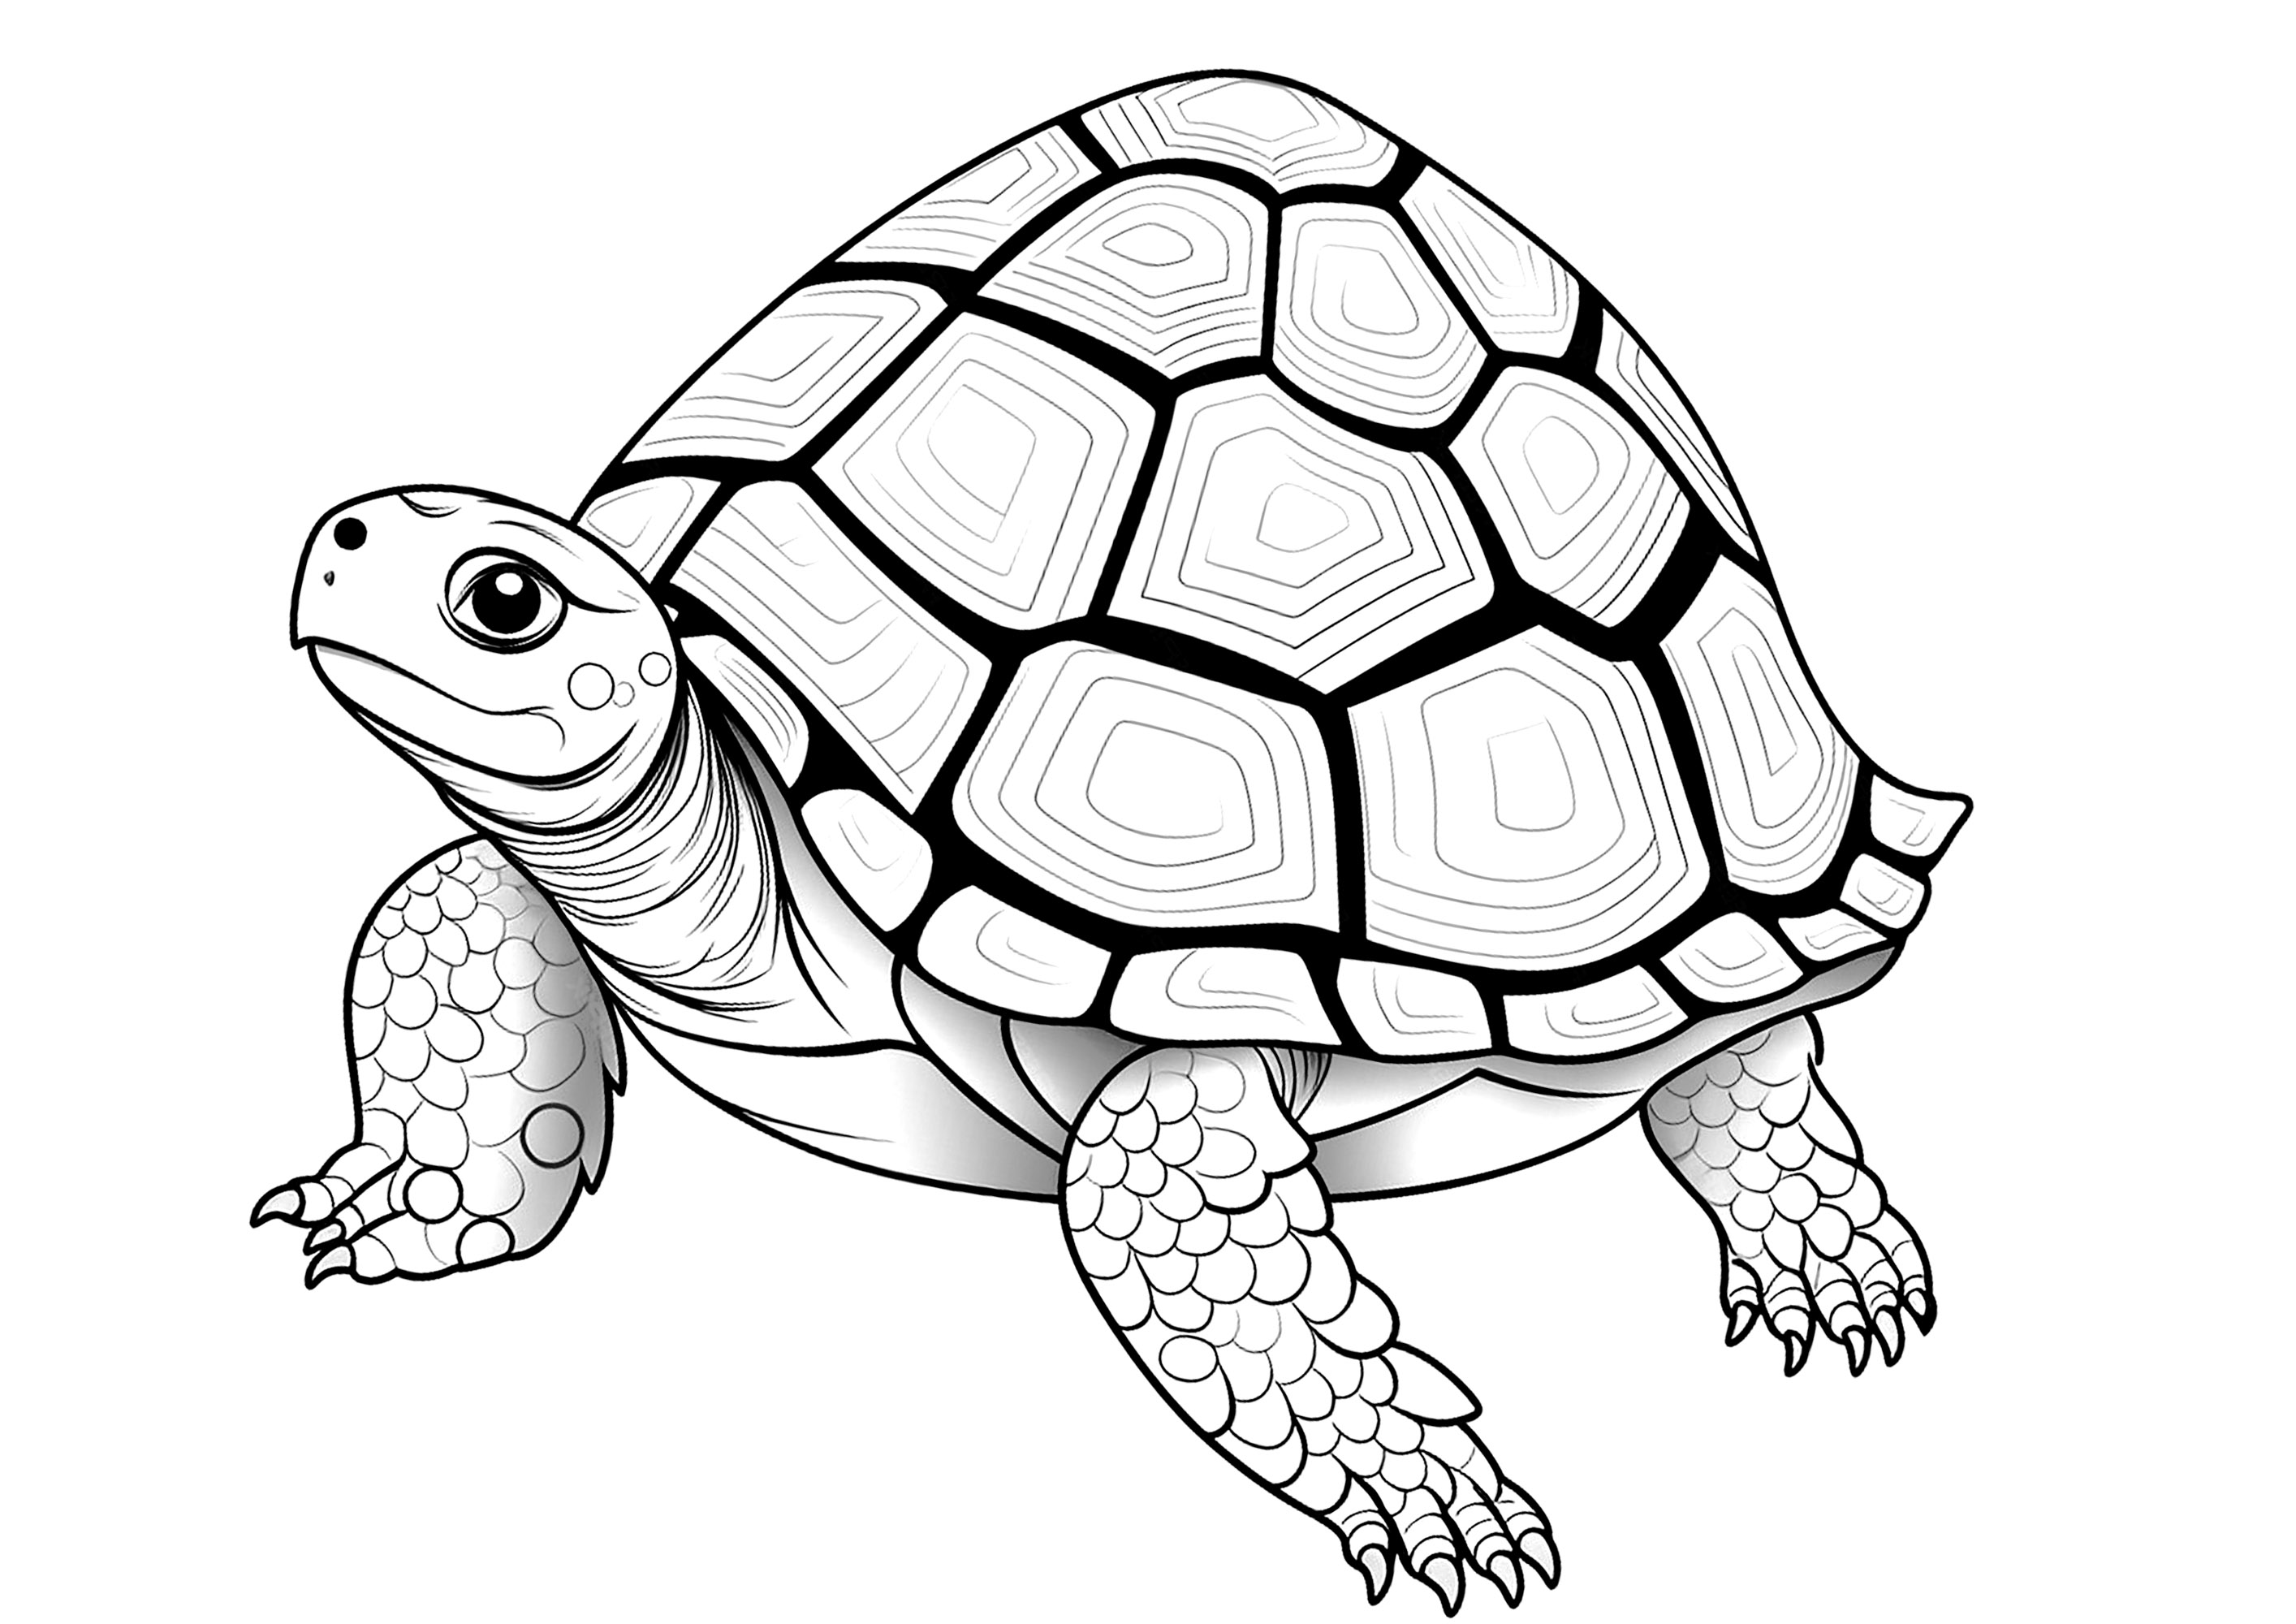 Dibujo de una tortuga con hermosas escamas